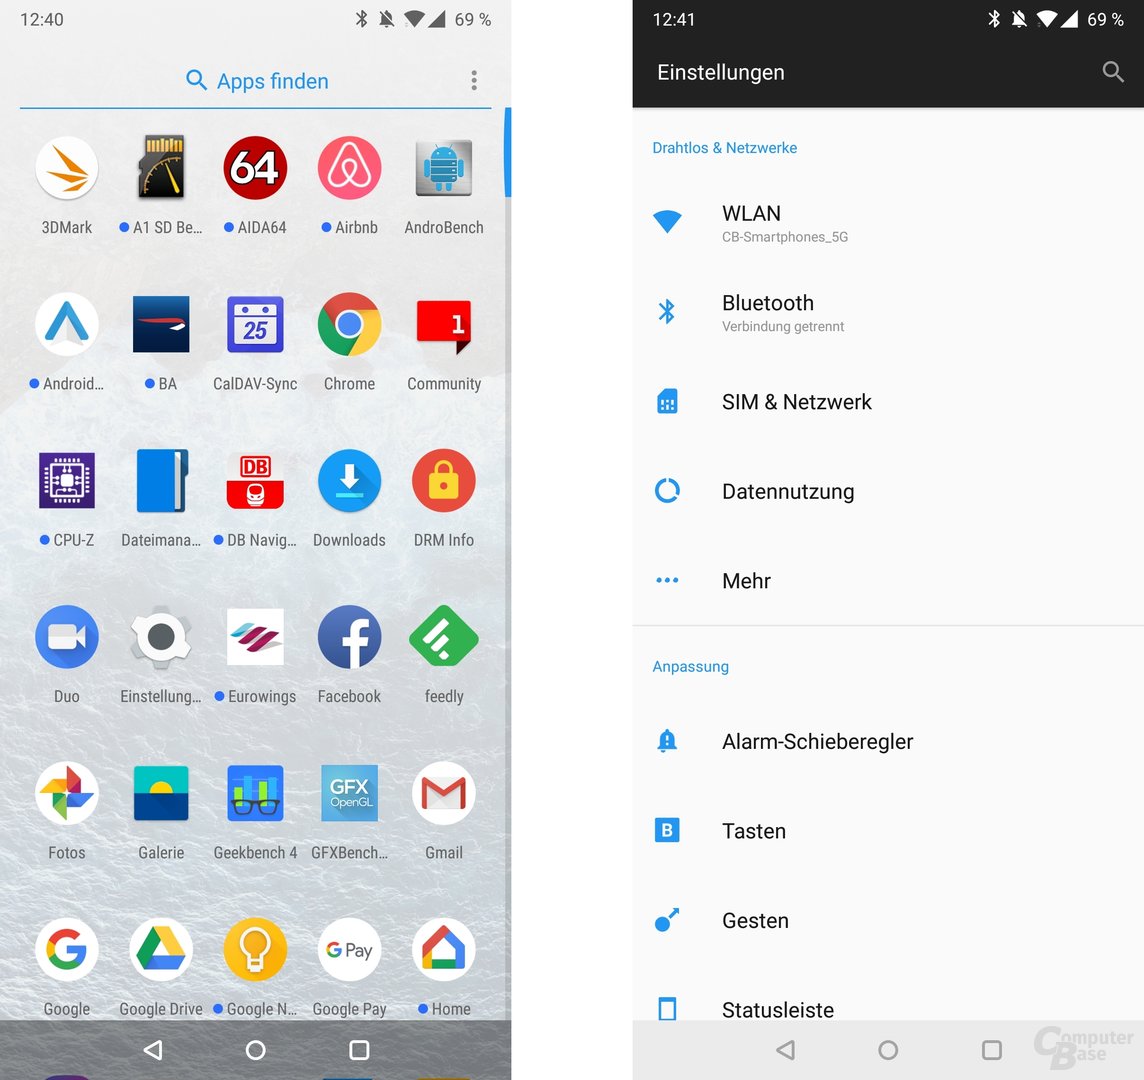 App-Drawer und Einstellungen im Stile von Stock-Android